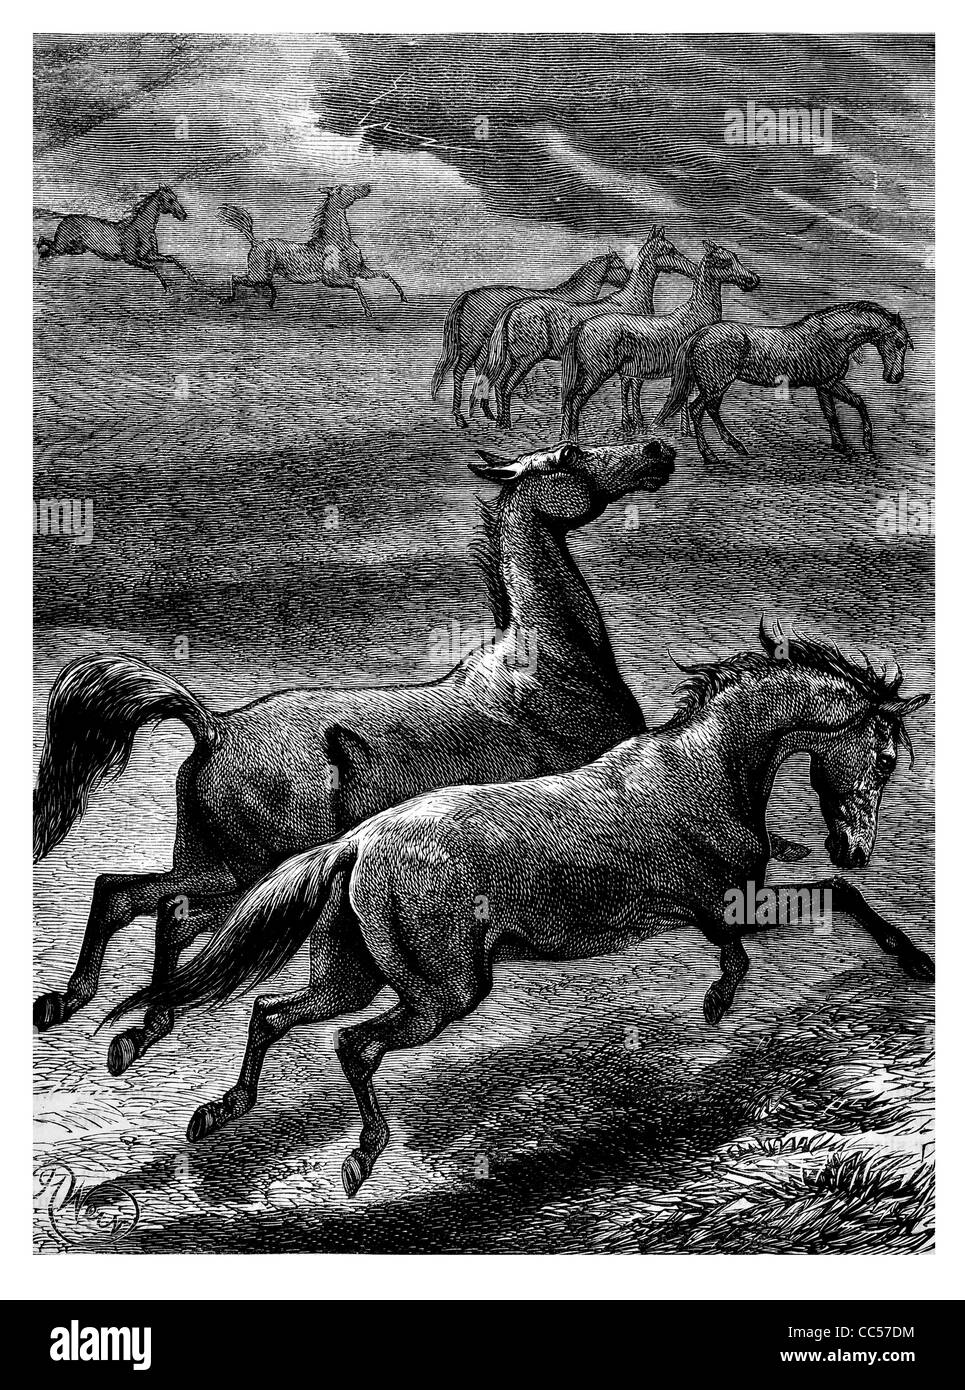 Cheval de cavalerie Cavalier Cavalier Cavalier guerrier animal nature militaire de première ligne l'habitat sauvage galop équitation ride field Banque D'Images